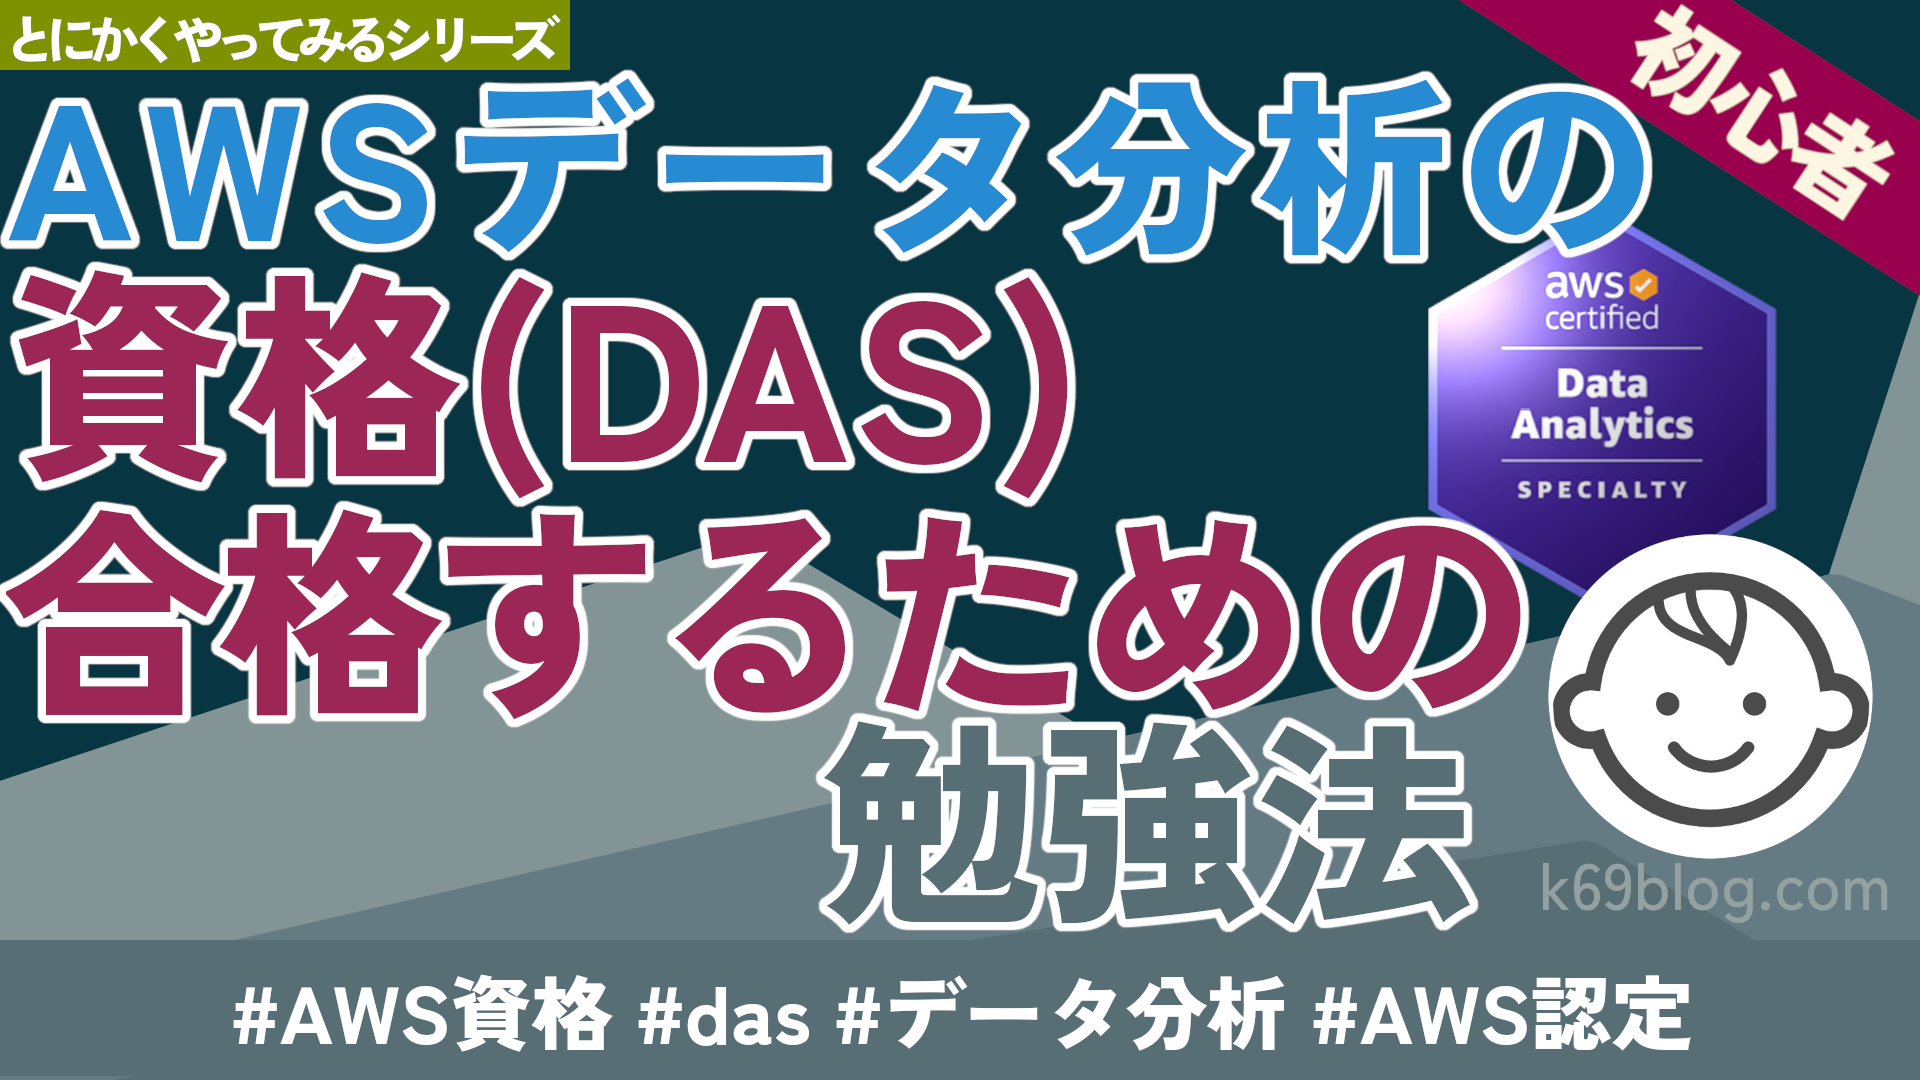 Cover Image for AWS データ分析の資格(DAS) 合格するための勉強法